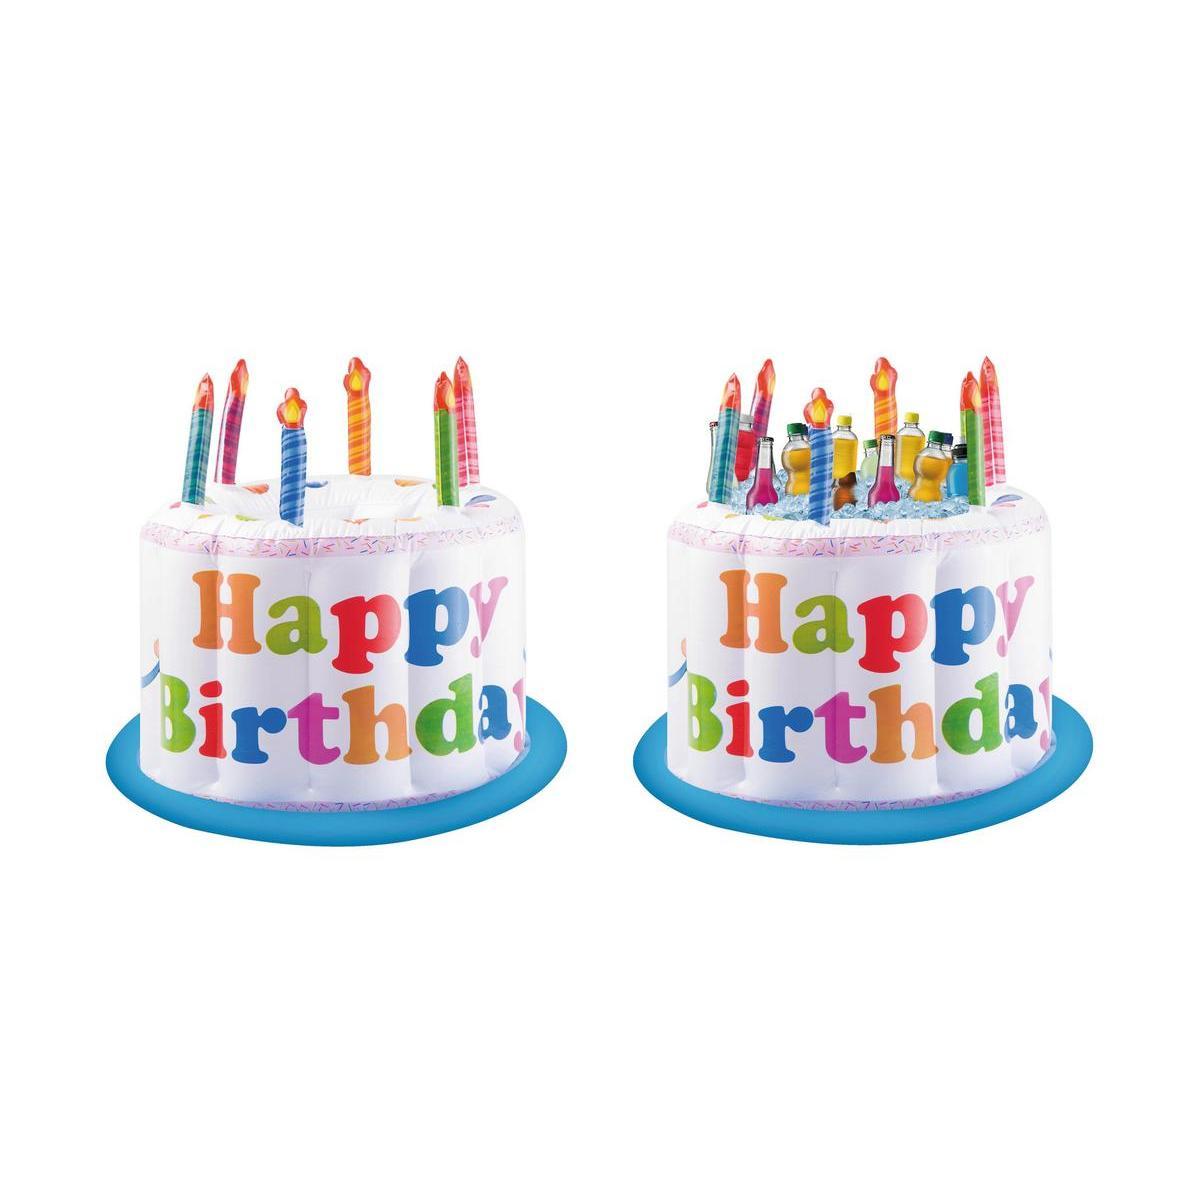 Gâteau d'anniversaire gonflable - PVC - Ø 55 x H 46 cm - Multicolore